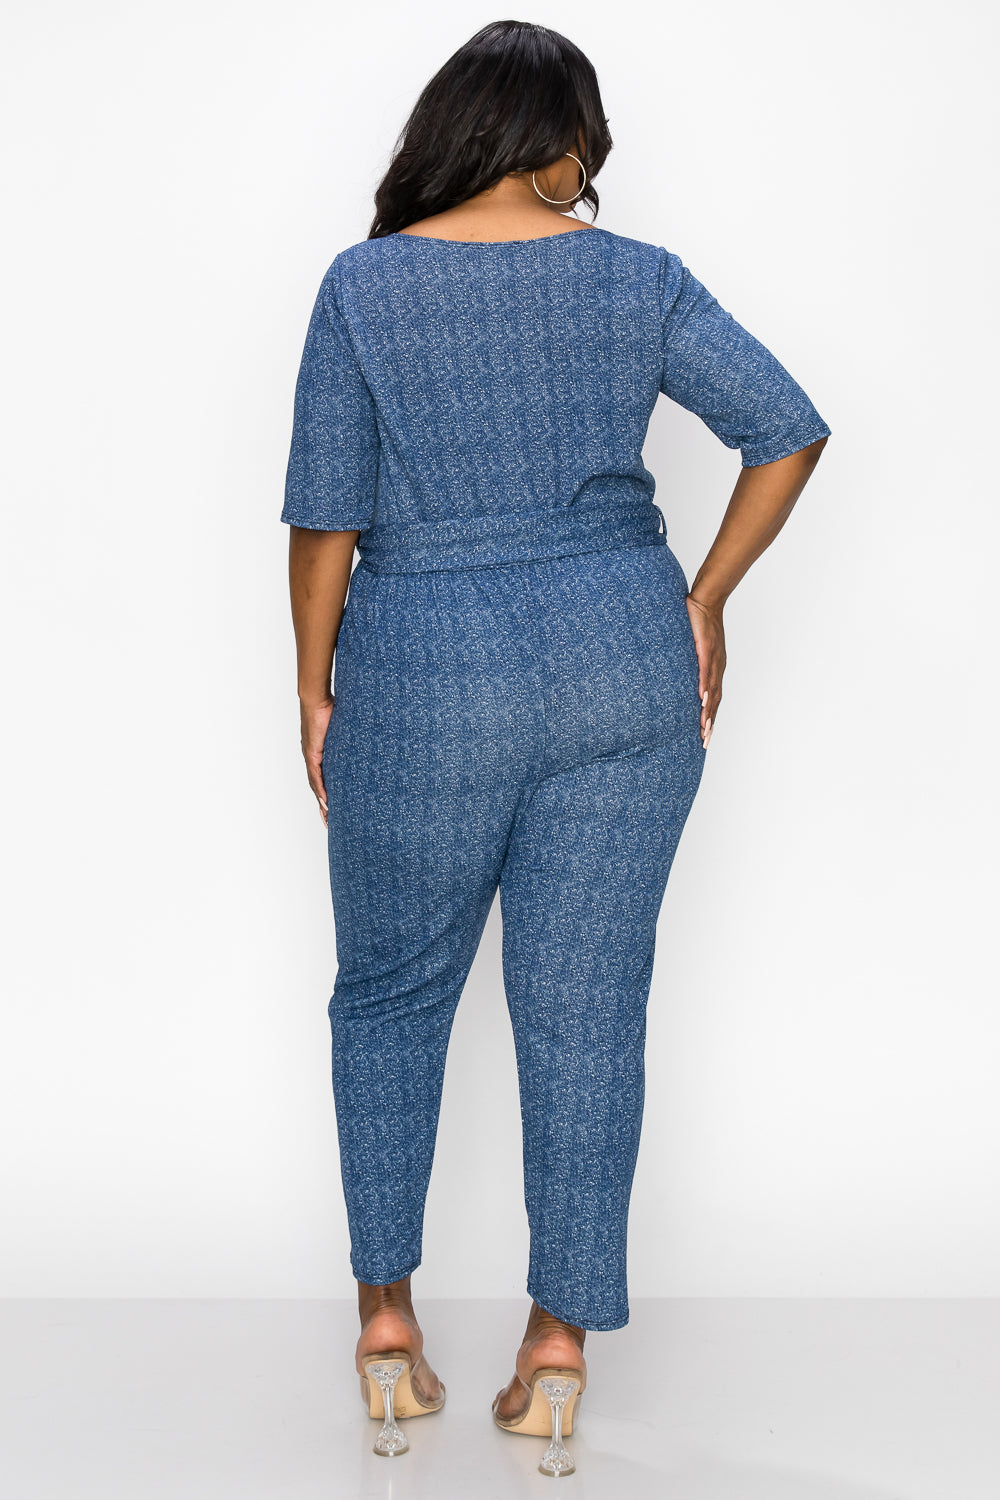 livd apparel plus size boutique contemporary wrap denim jumpsuit waist tie pockets in navy blue